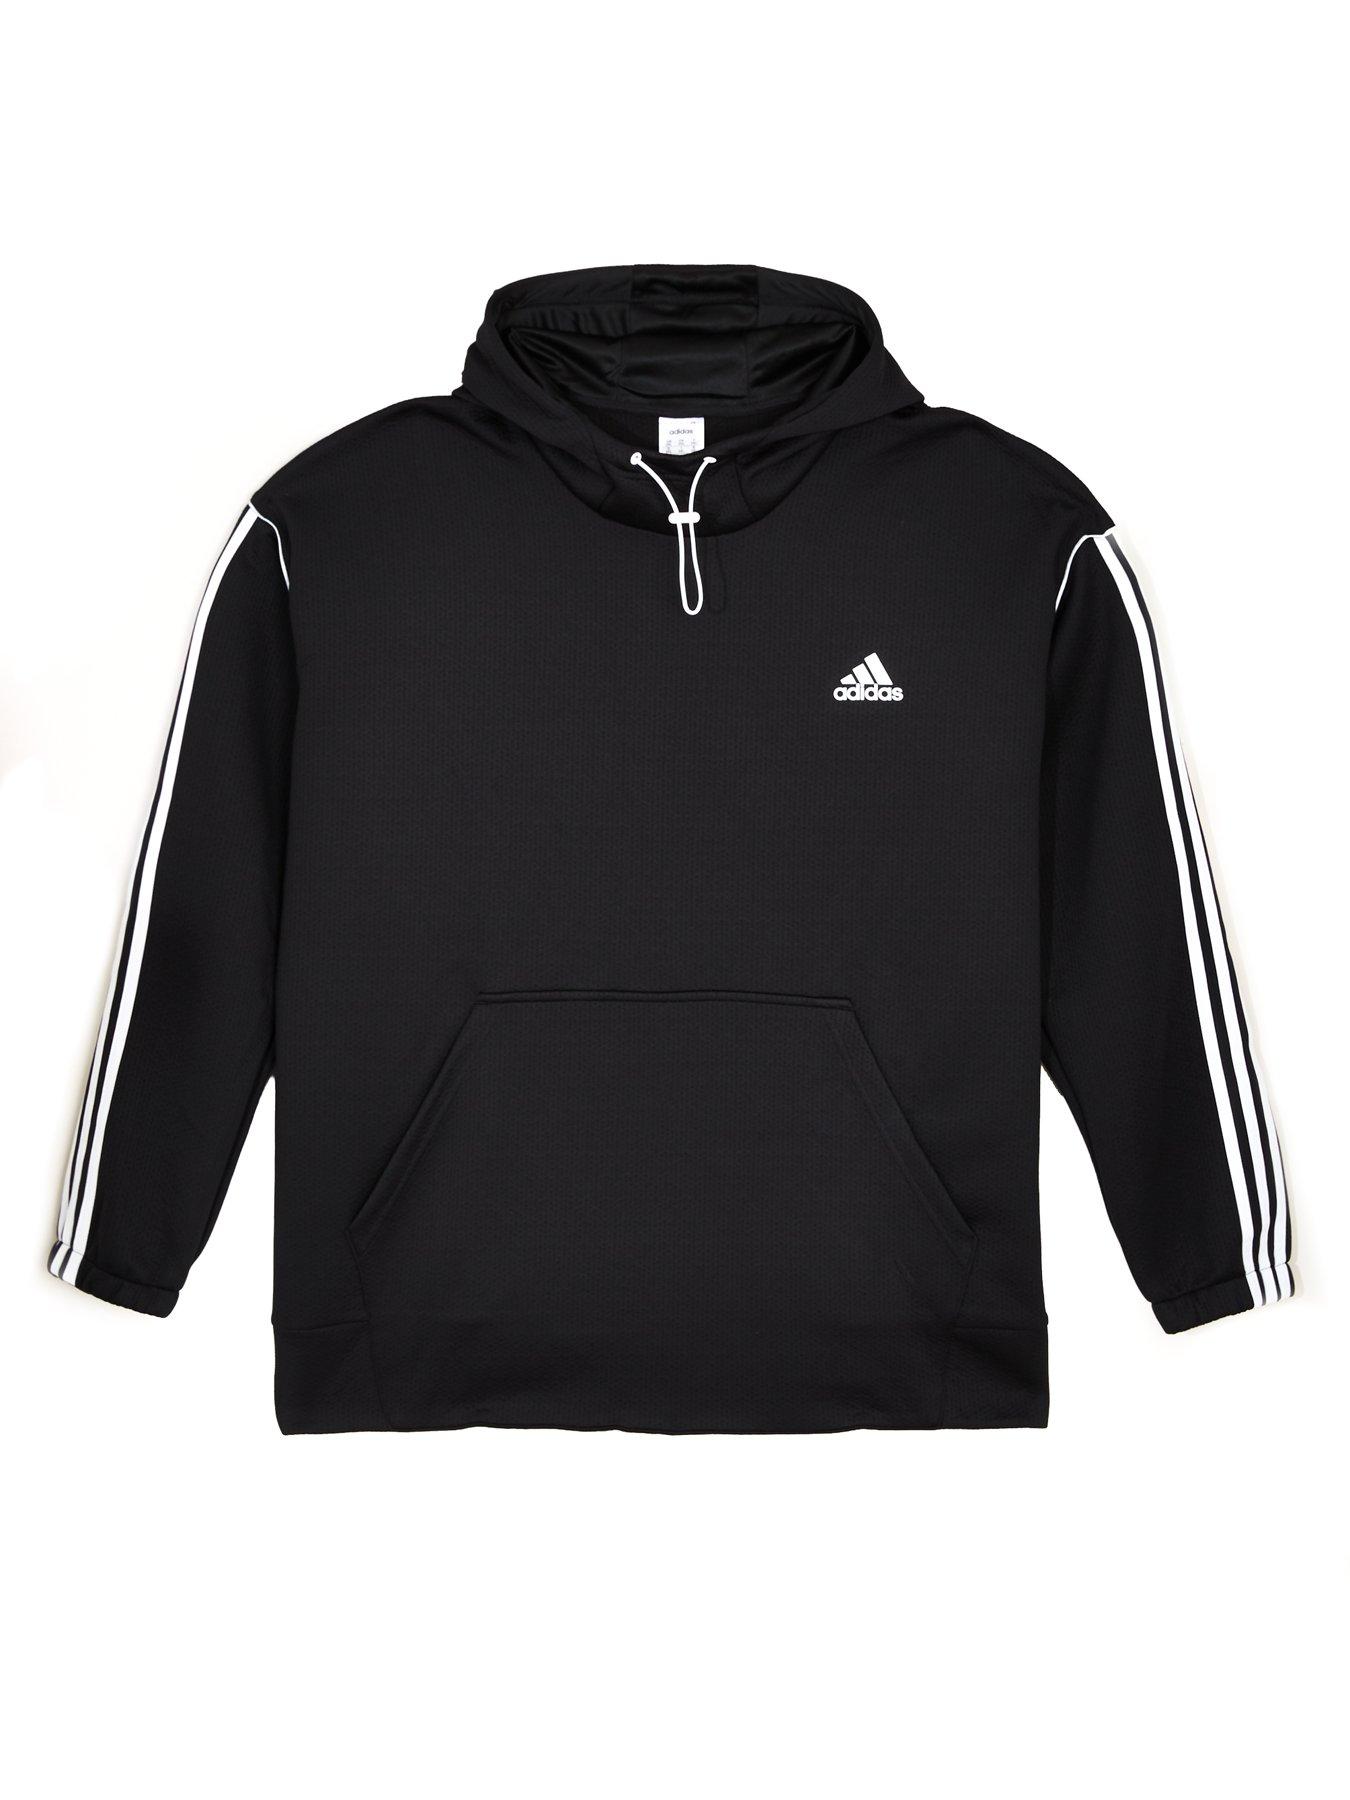 4XL | Adidas | Hoodies \u0026 sweatshirts 